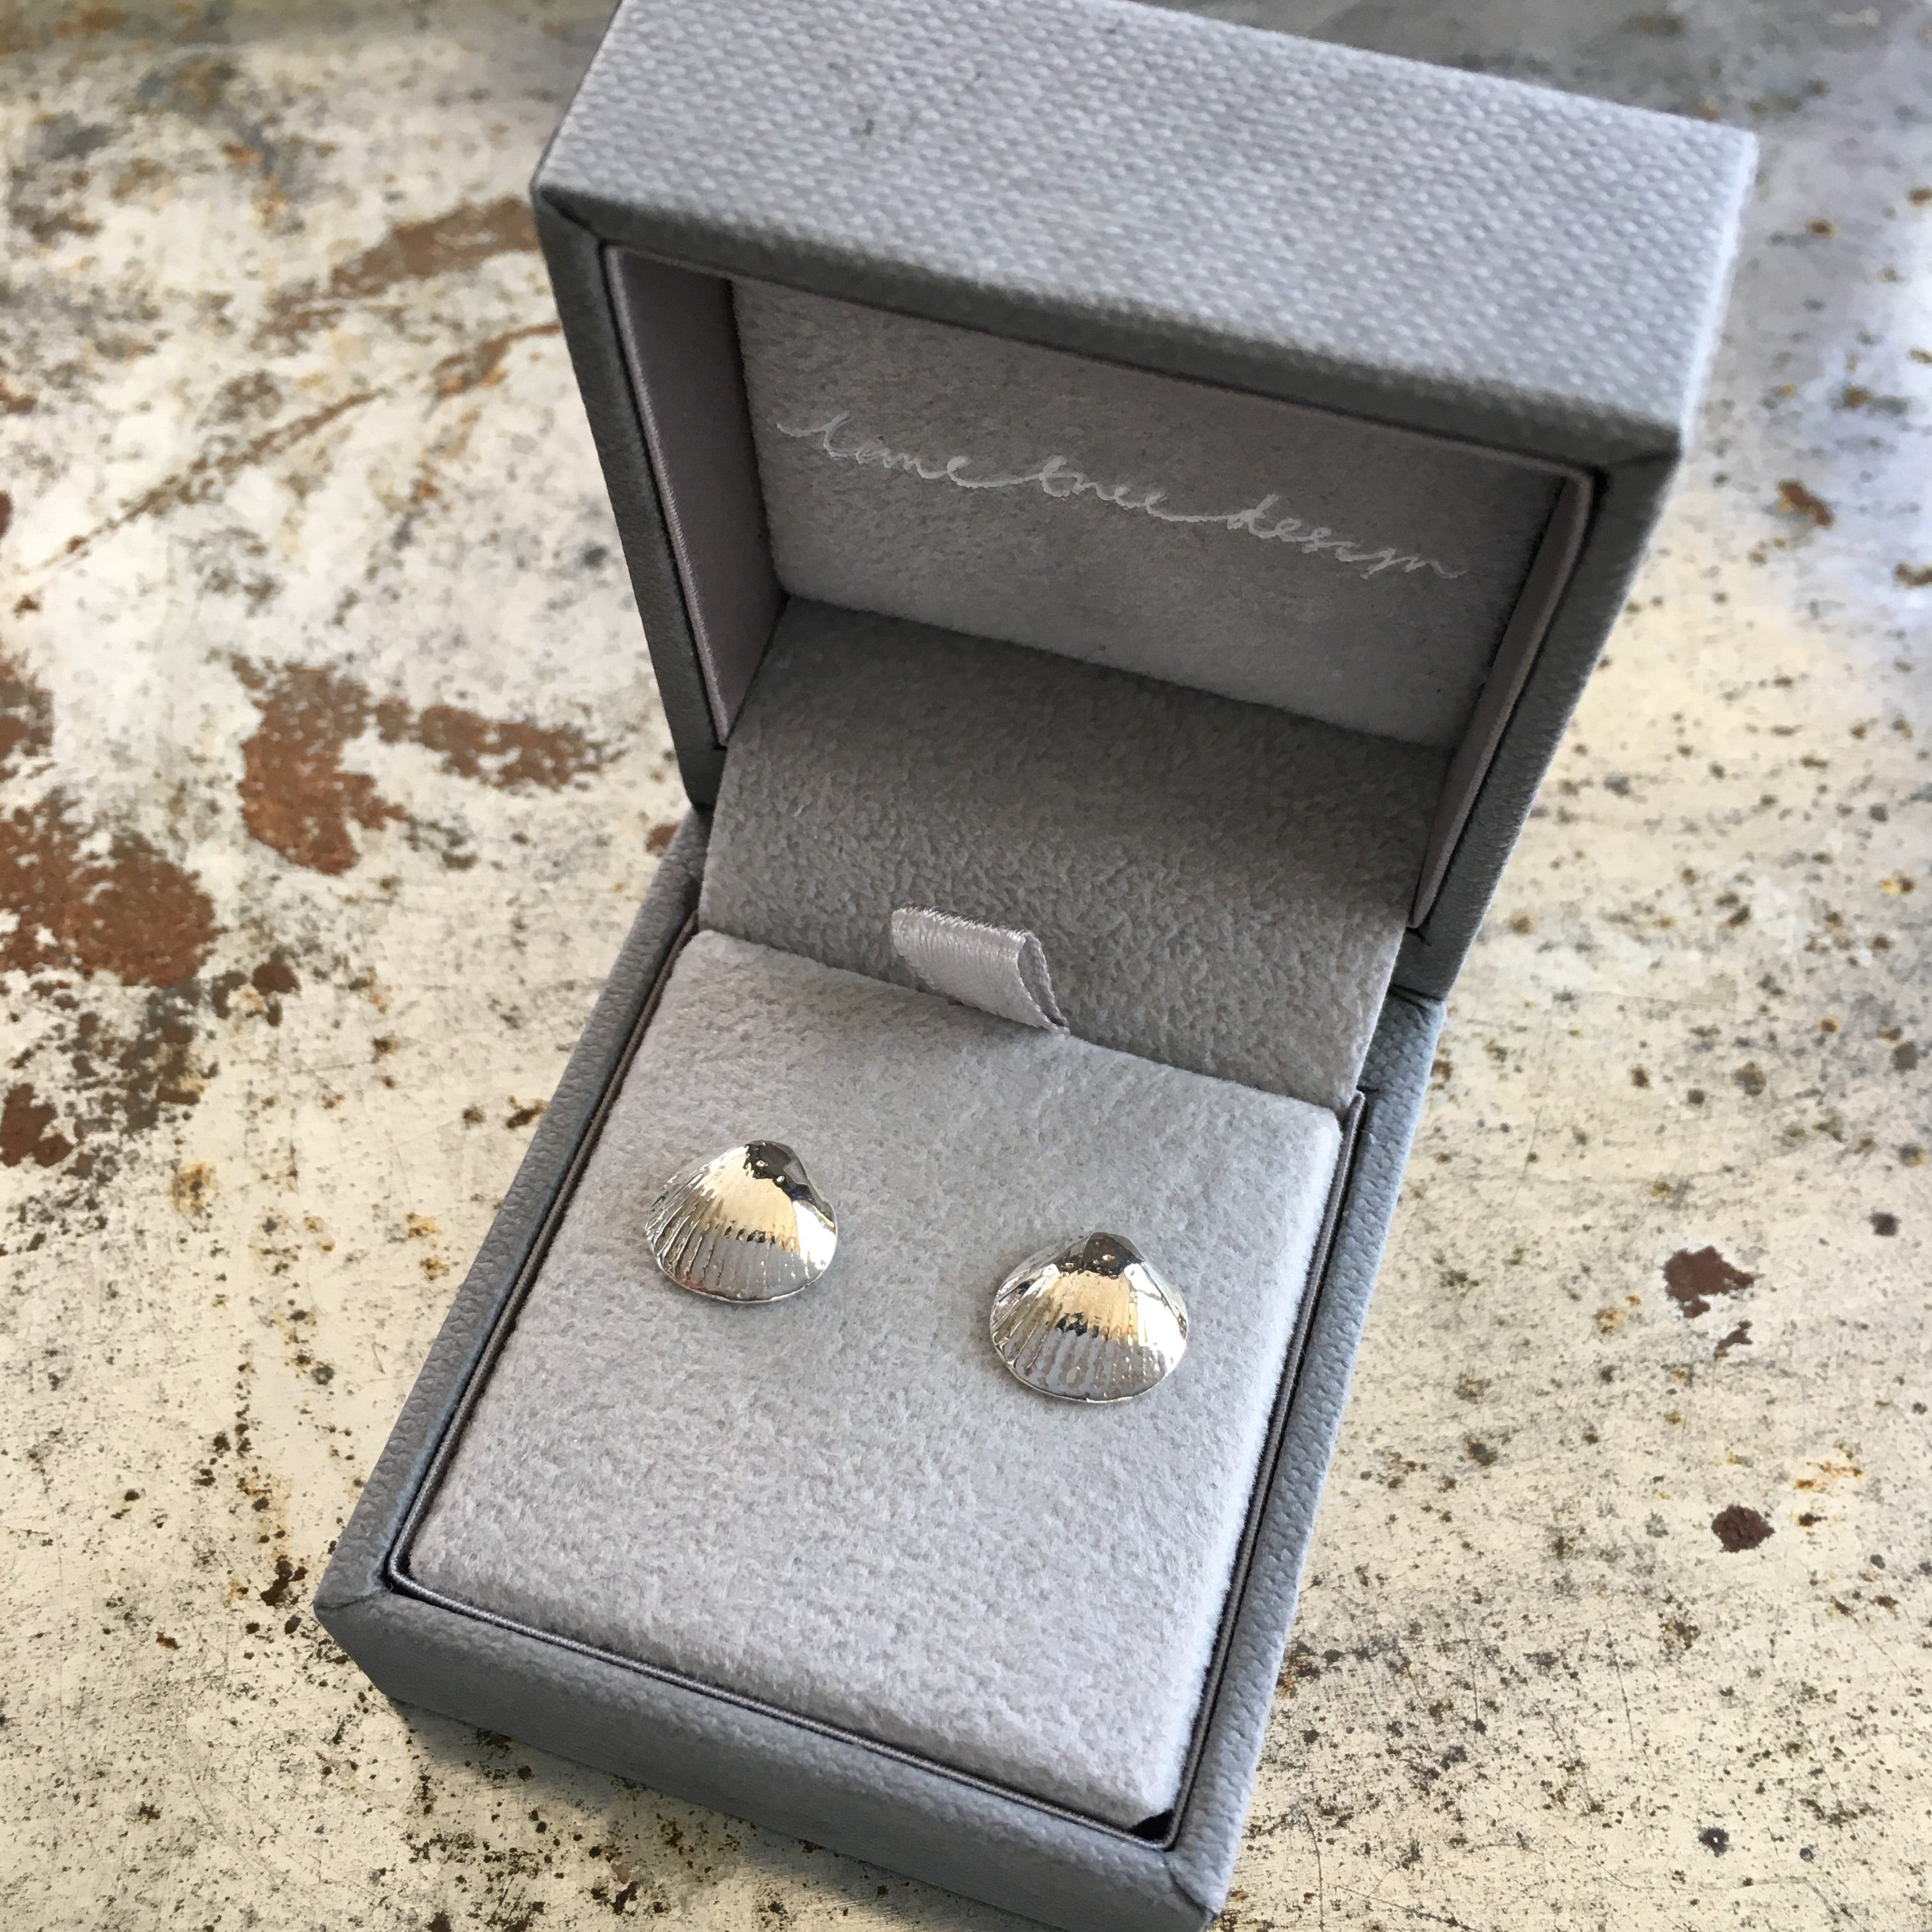 Shell Stud Earrings Sterling Silver